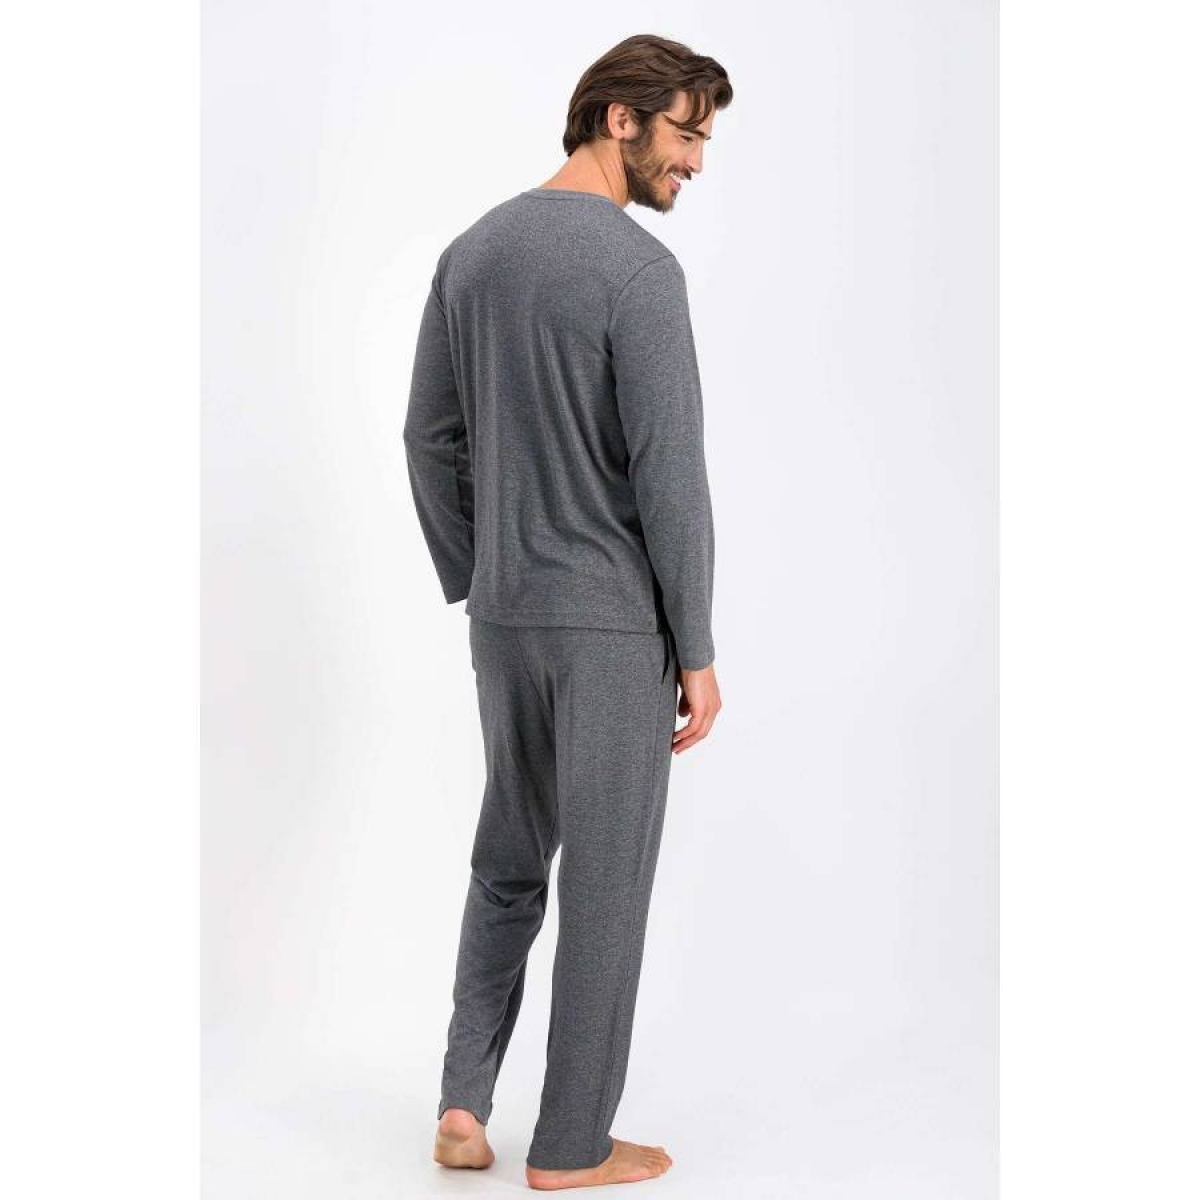 Flo Tile Antrasit Erkek Pijama Takımı. 3